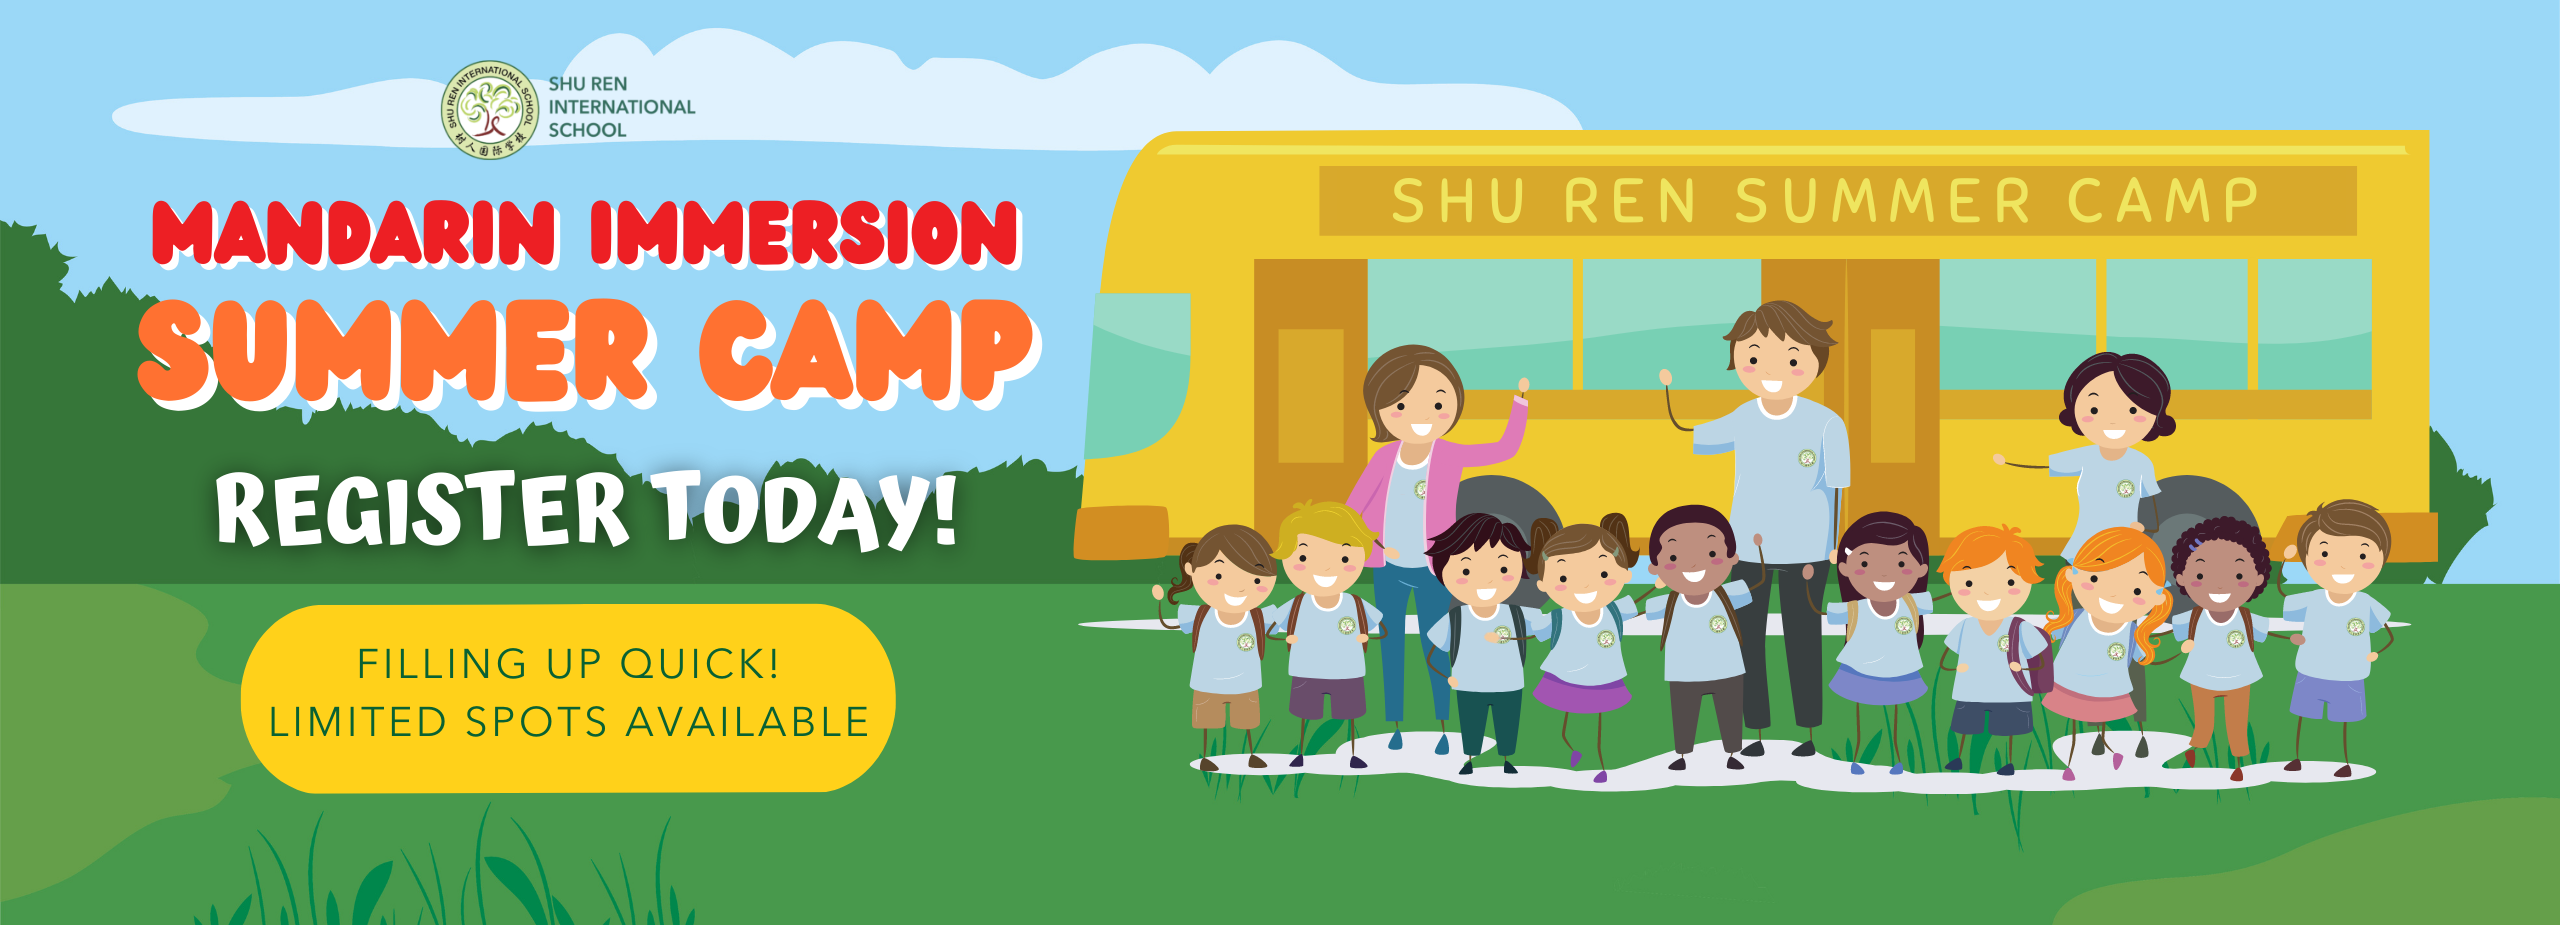 Shu Ren International School Mandarin Immersion Summer Camp